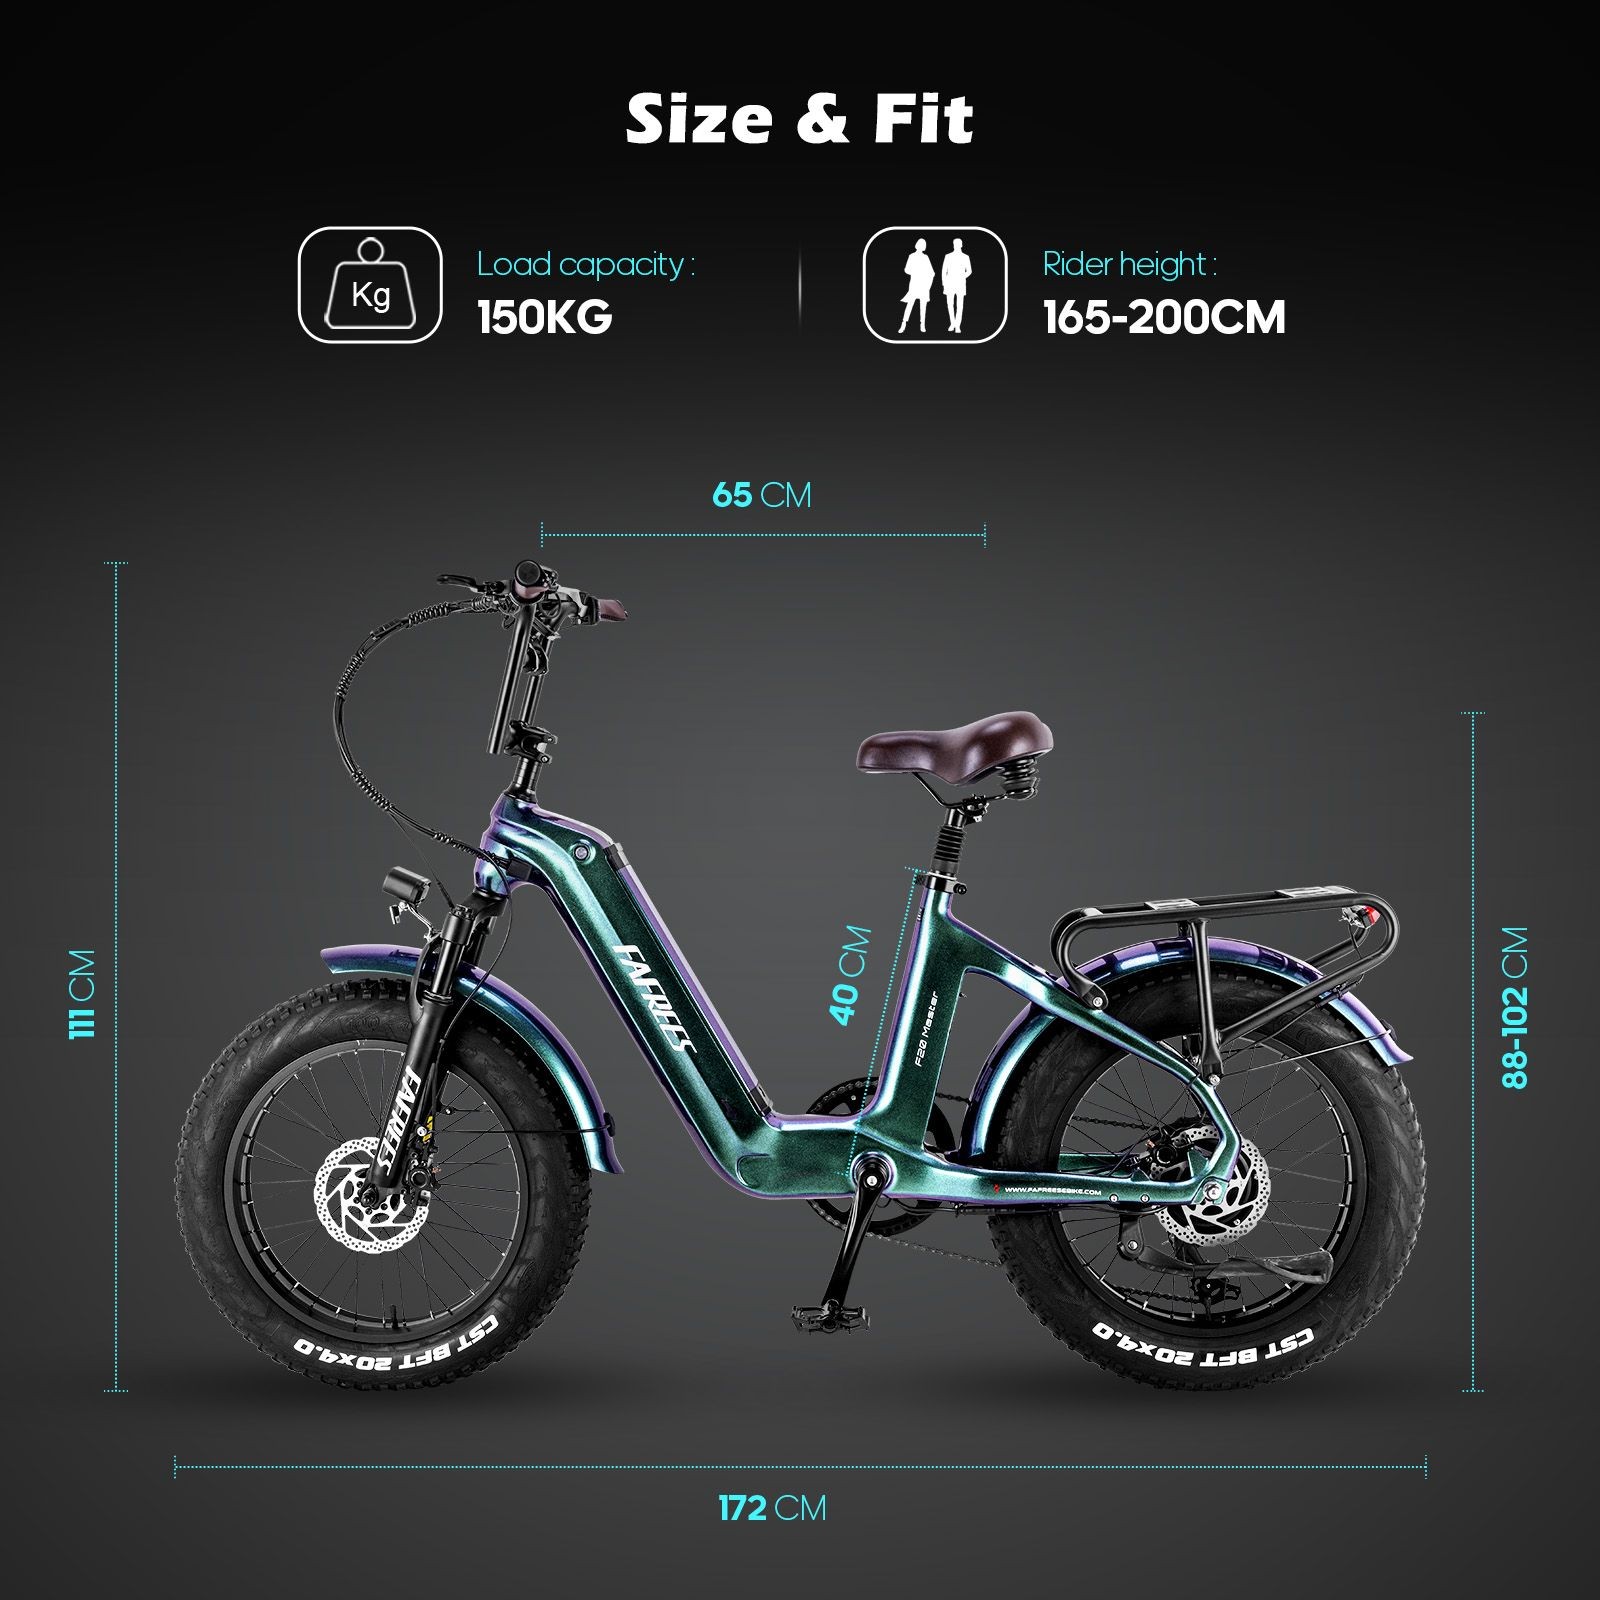 Bici elettrica FAREES F20 Master E-bike 20*4.0 Pneumatico 500W Blu